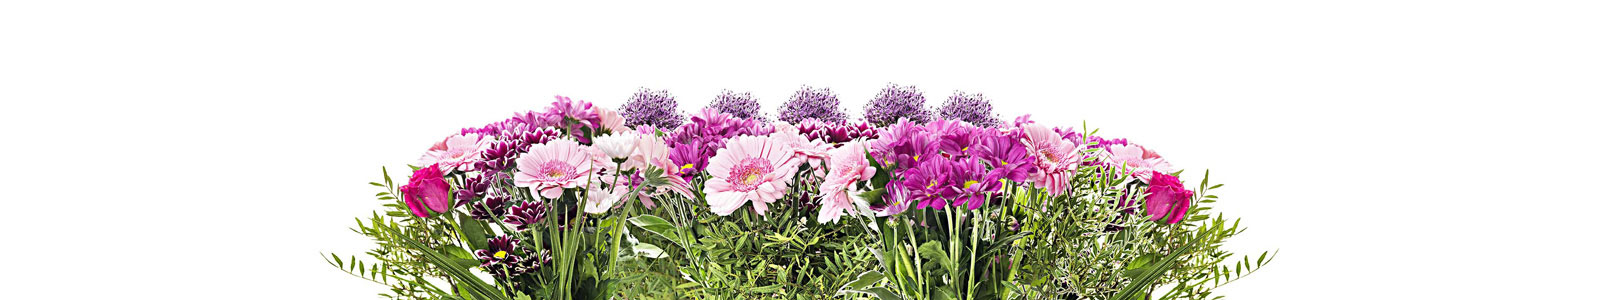 №4283 - Розово-фиолетовые цветы